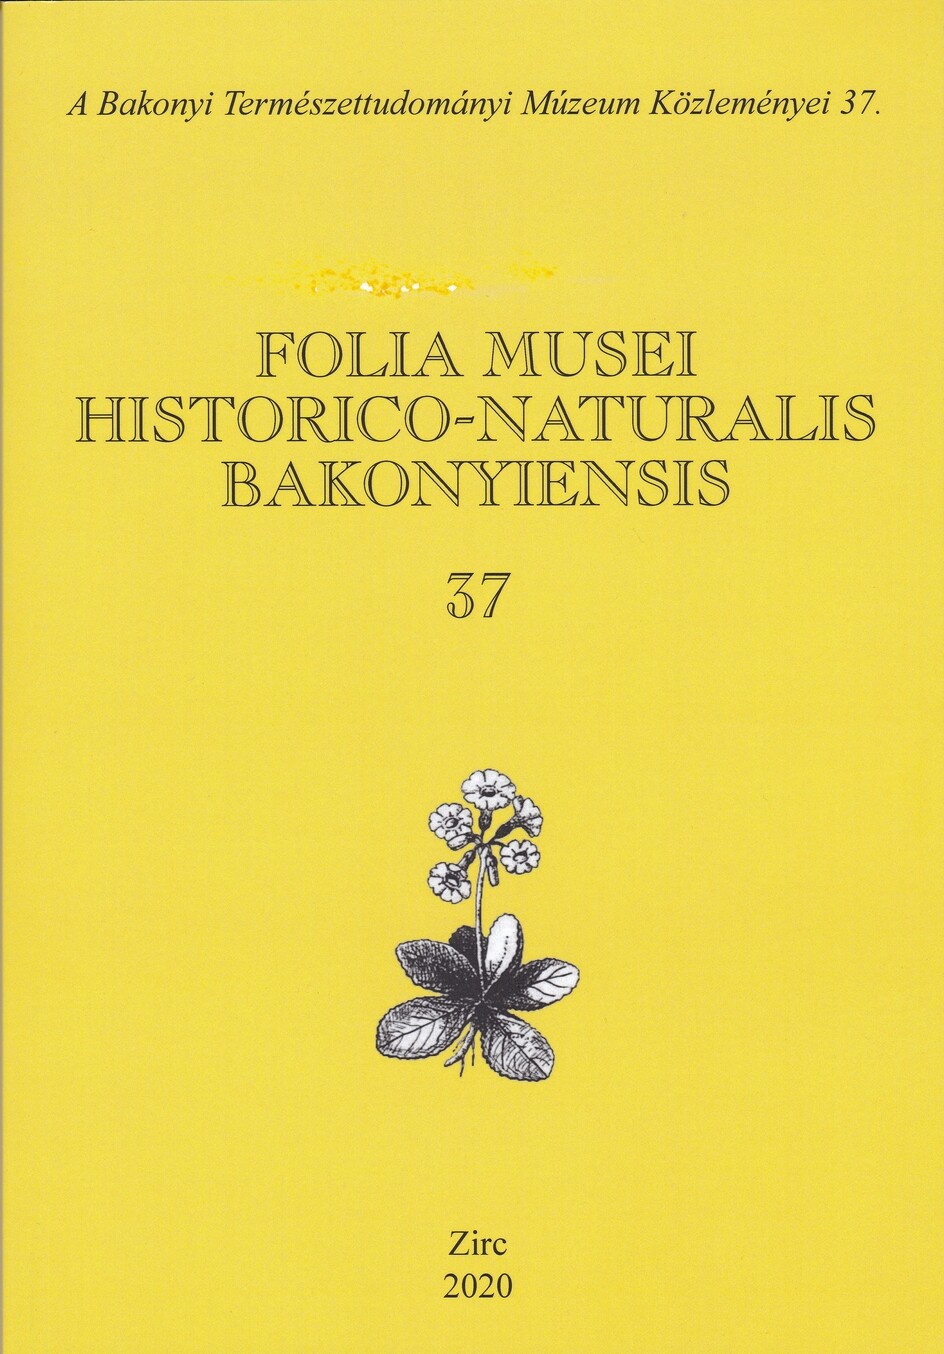 Folia Musei Historico-Naturalis Bakonyiensis. A Bakonyi Természettudományi Múzeum Közleményei 2020/37. (Rippl-Rónai Múzeum CC BY-NC-ND)